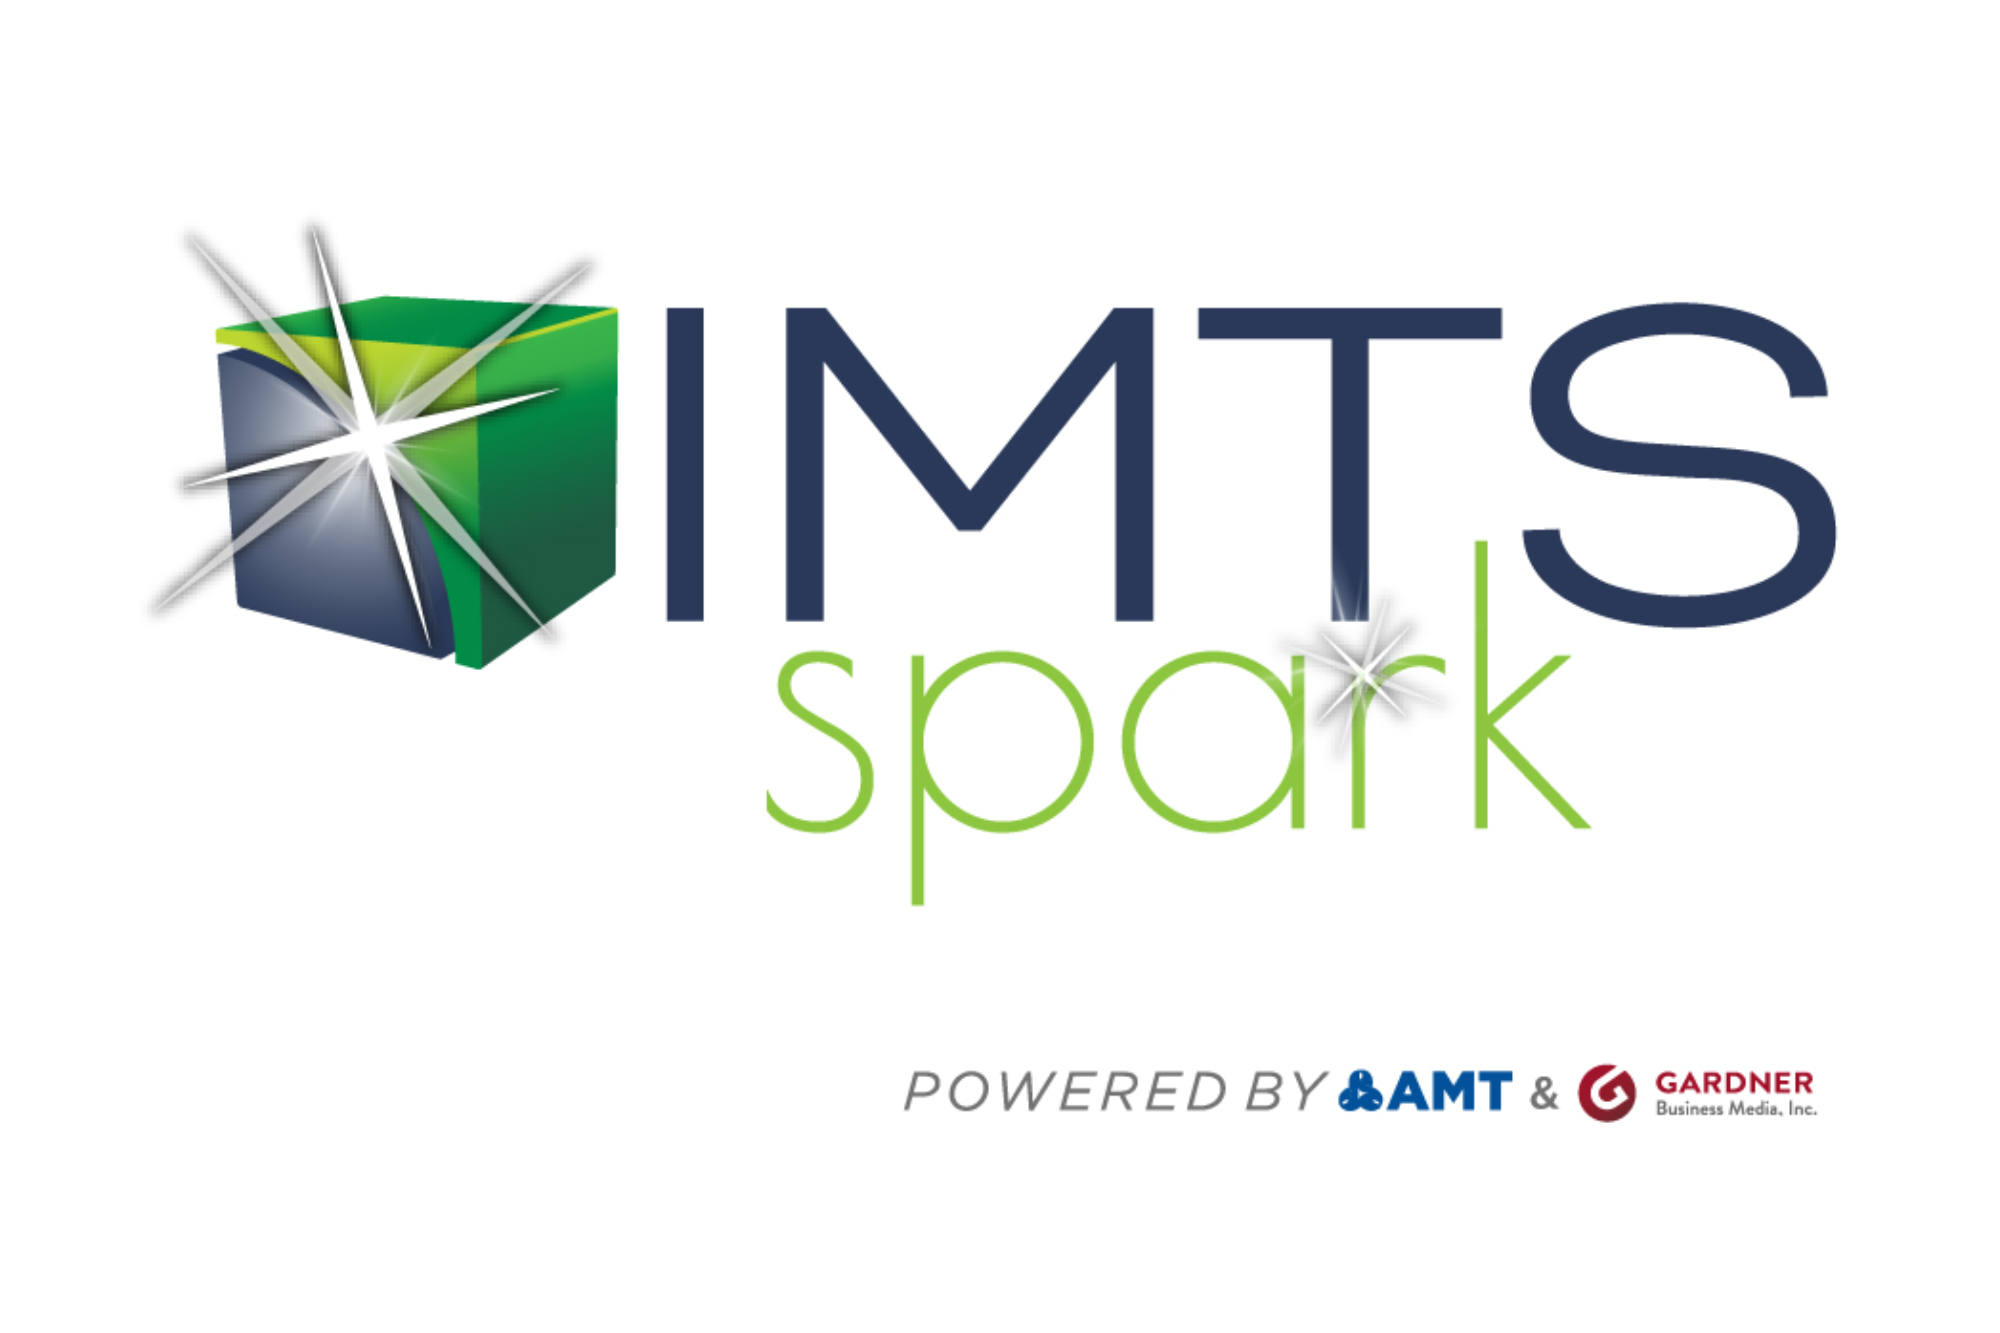 IMTS spark arrancó el 21 de septiembre y se extenderá hasta el 15 de marzo de 2021.